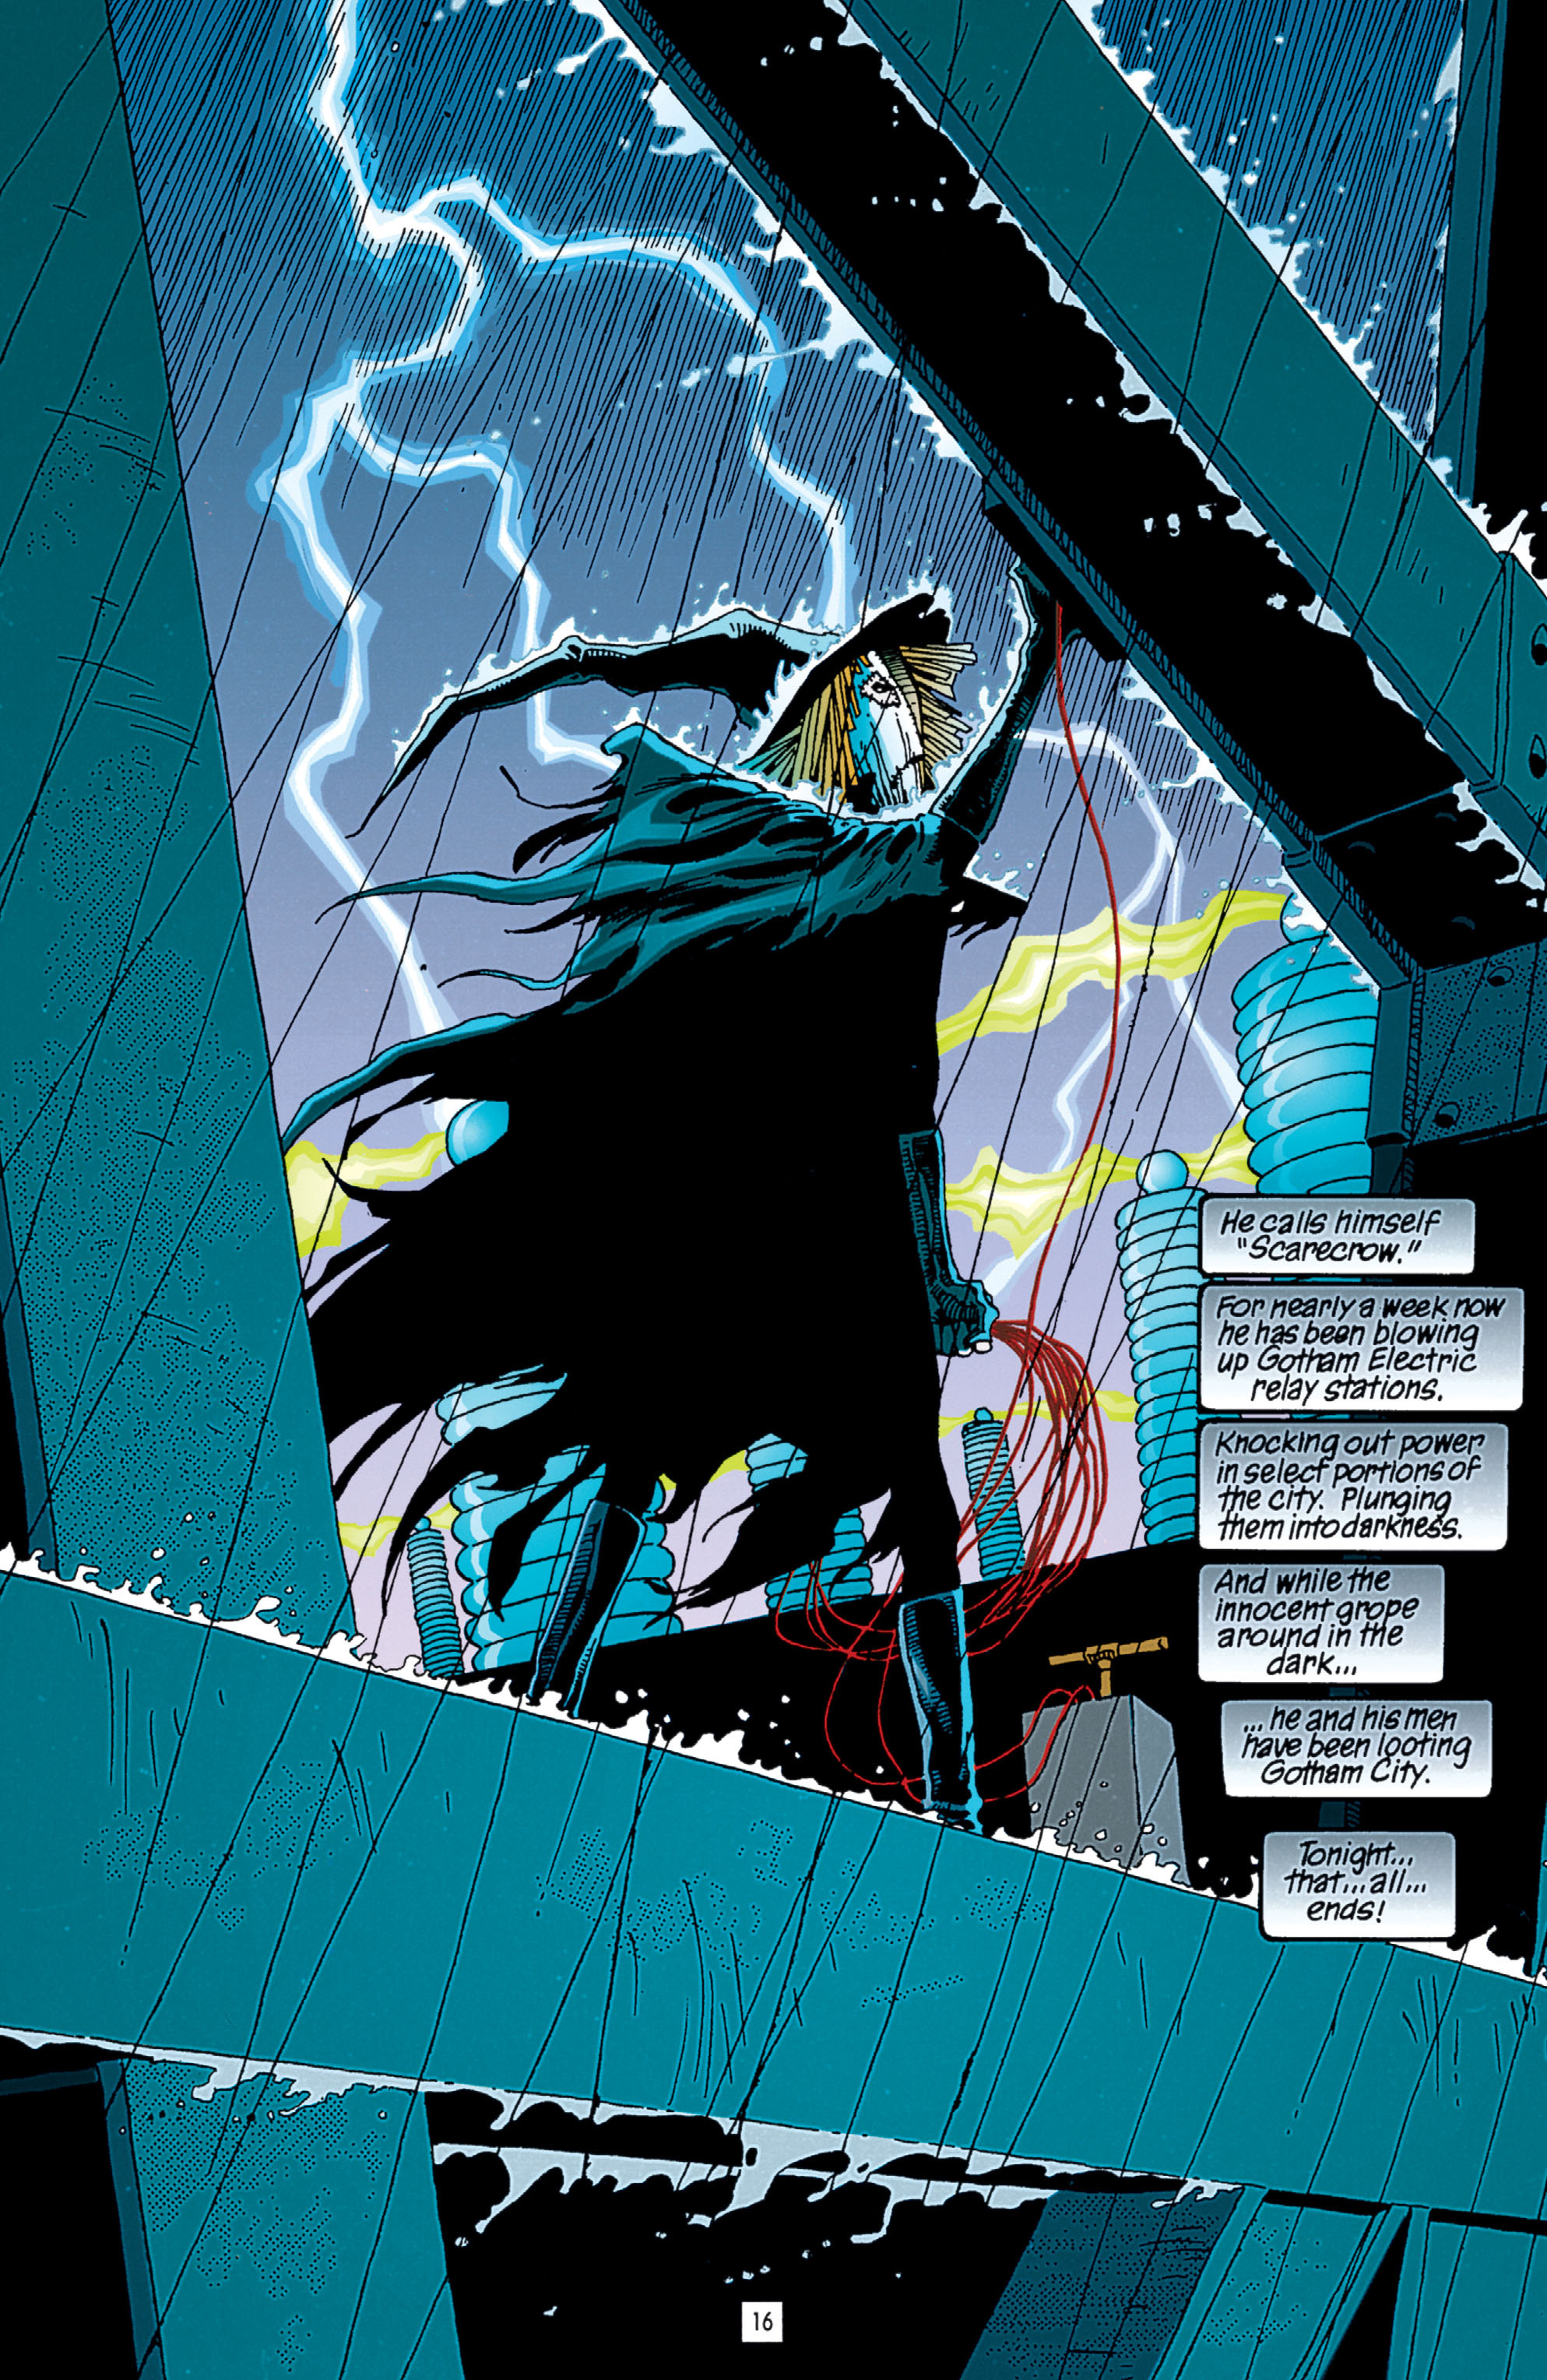 Read online Batman: Haunted Knight comic -  Issue # TPB - 16